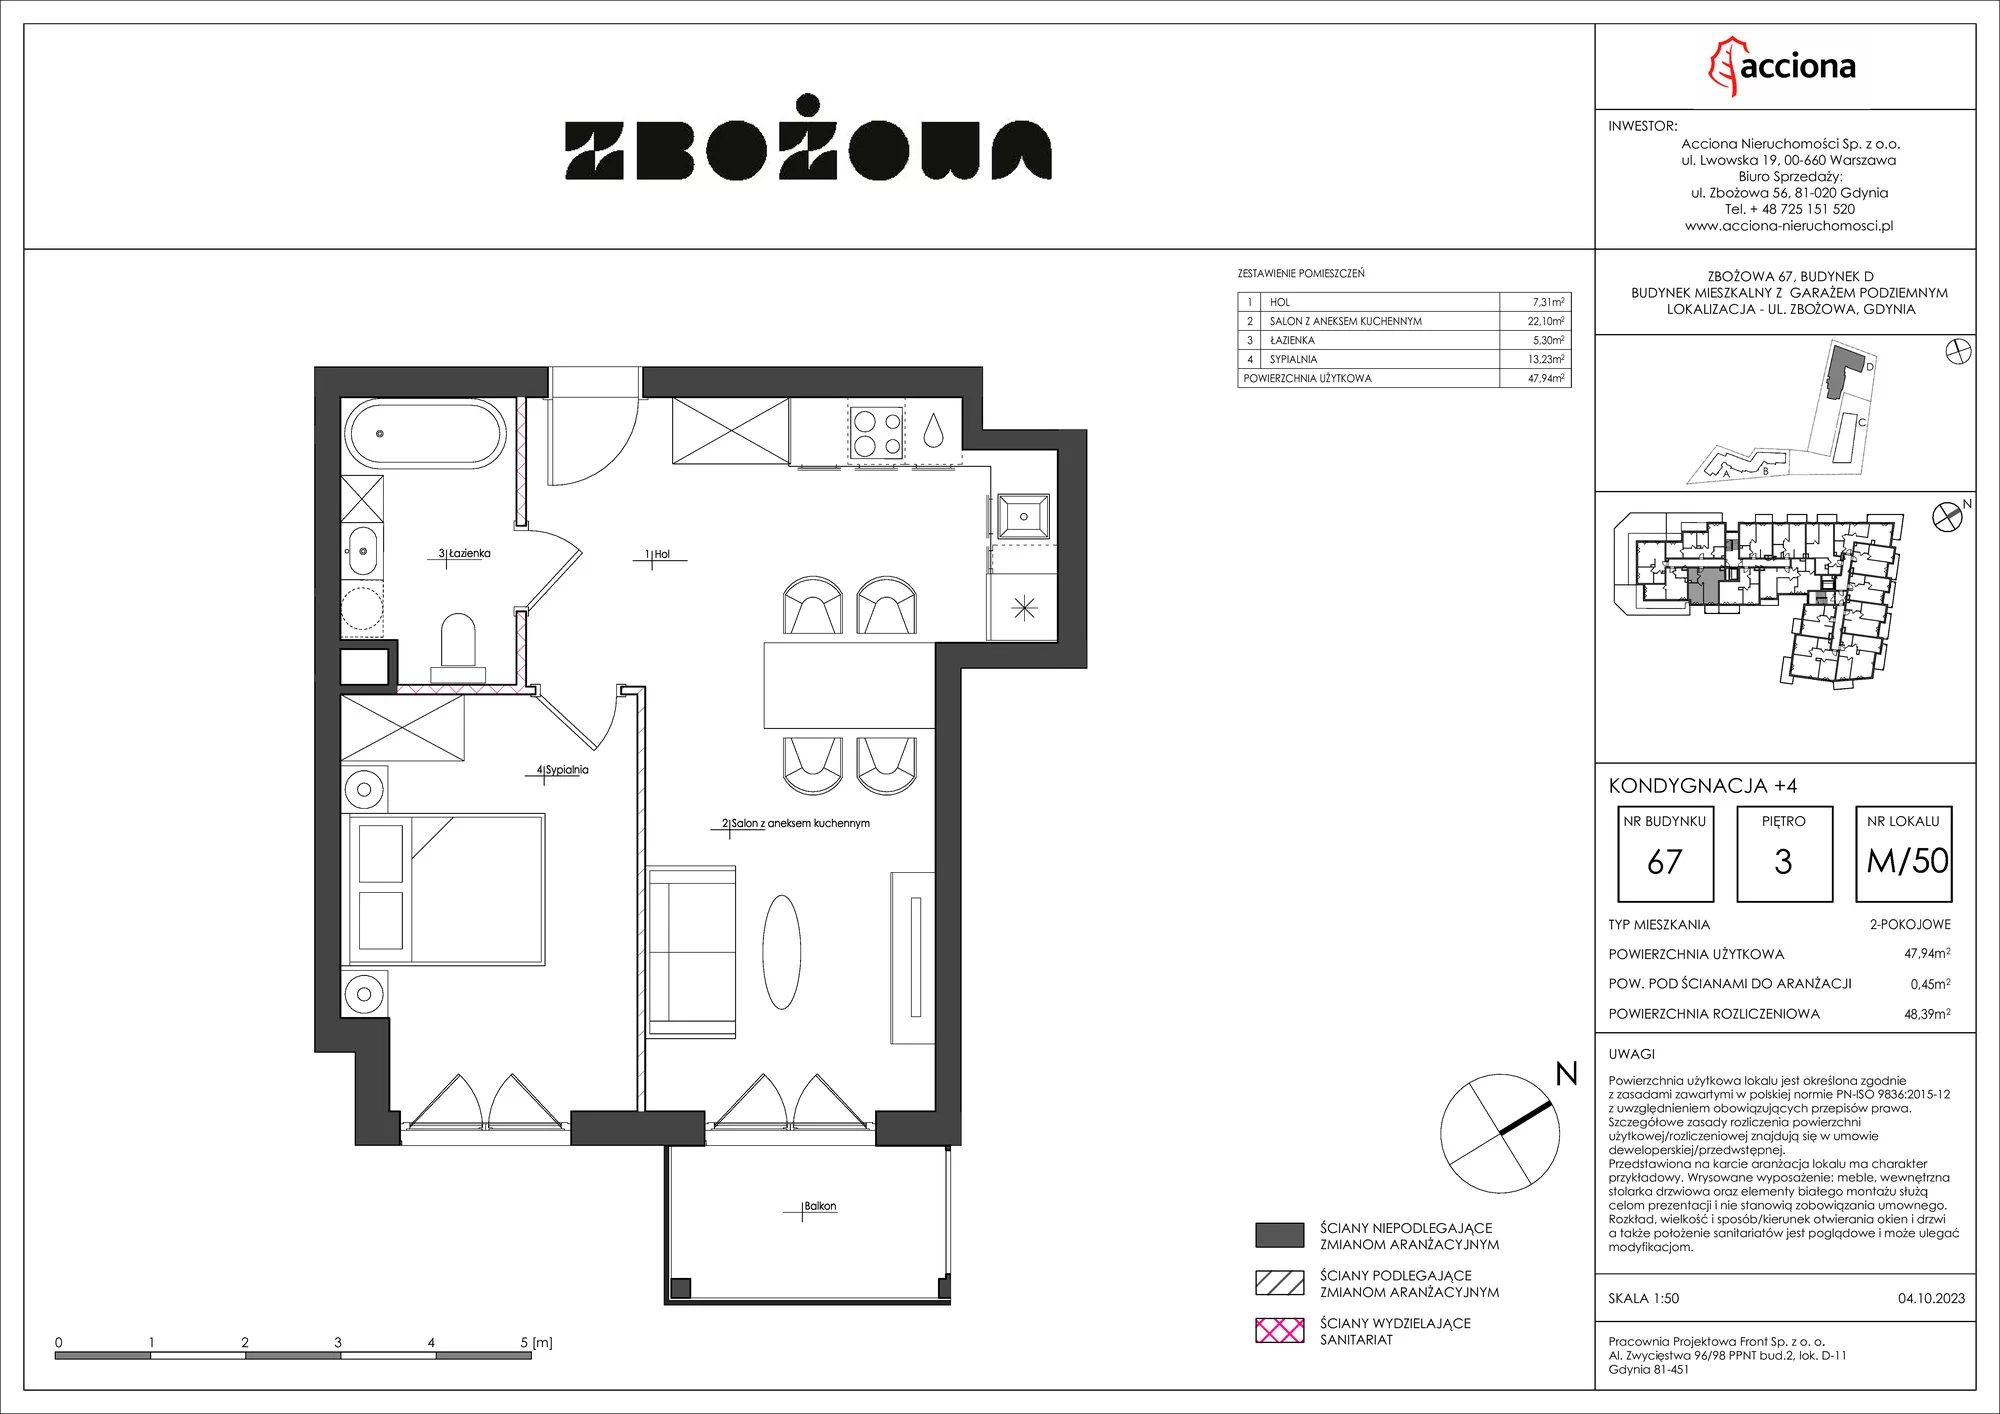 Mieszkanie 48,39 m², piętro 3, oferta nr 67.50, Zbożowa, Gdynia, Cisowa, ul. Zbożowa